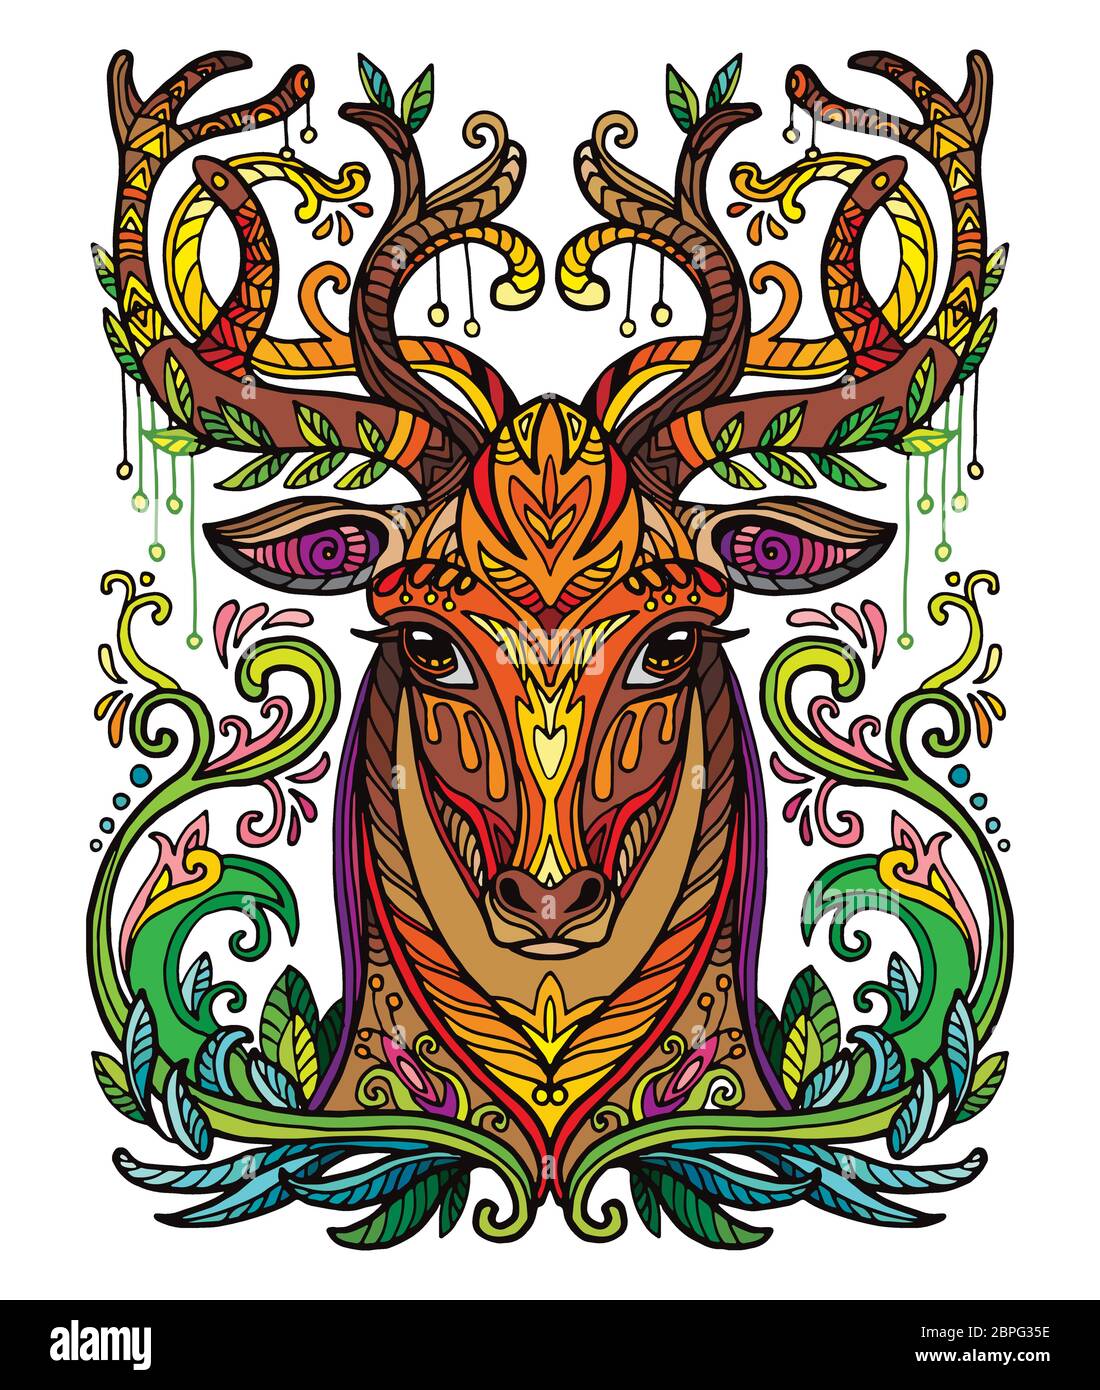 Vettore decorativo doodle testa ornamentale di cervo. Vettore astratto colorato illustrazione della testa di cervo isolato su sfondo bianco. Illustrazione del magazzino Illustrazione Vettoriale